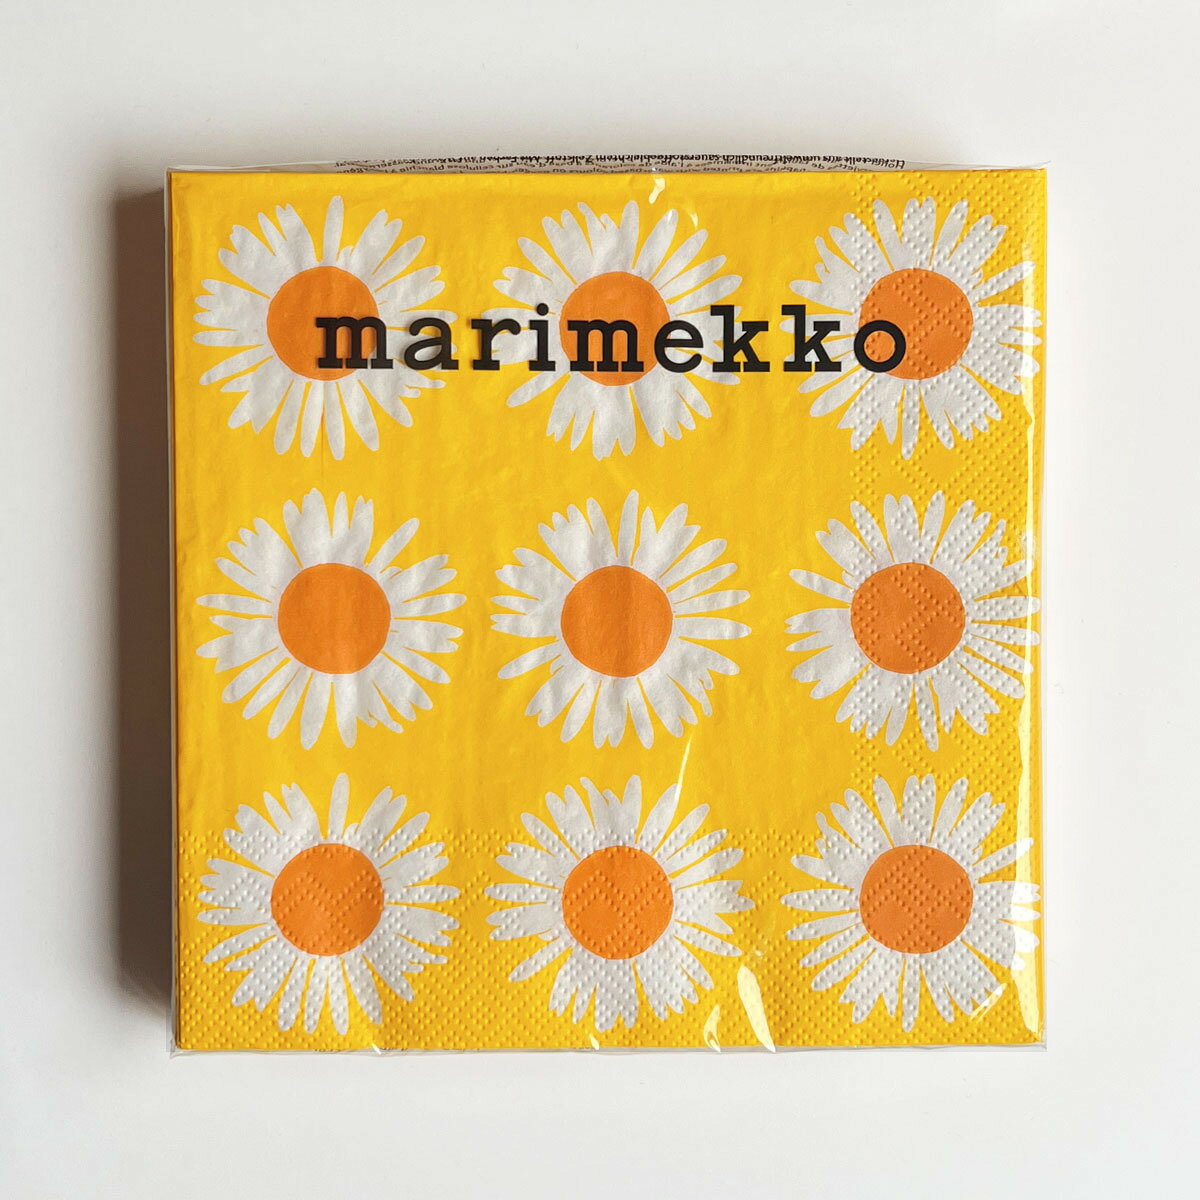 マリメッコ marimekko ペーパーナプキン 紙ナプキン ランチサイズ ihr 20枚 982317 AURINGONKUKKA アウリンゴンクッカ orange yellow イエロー系 北欧